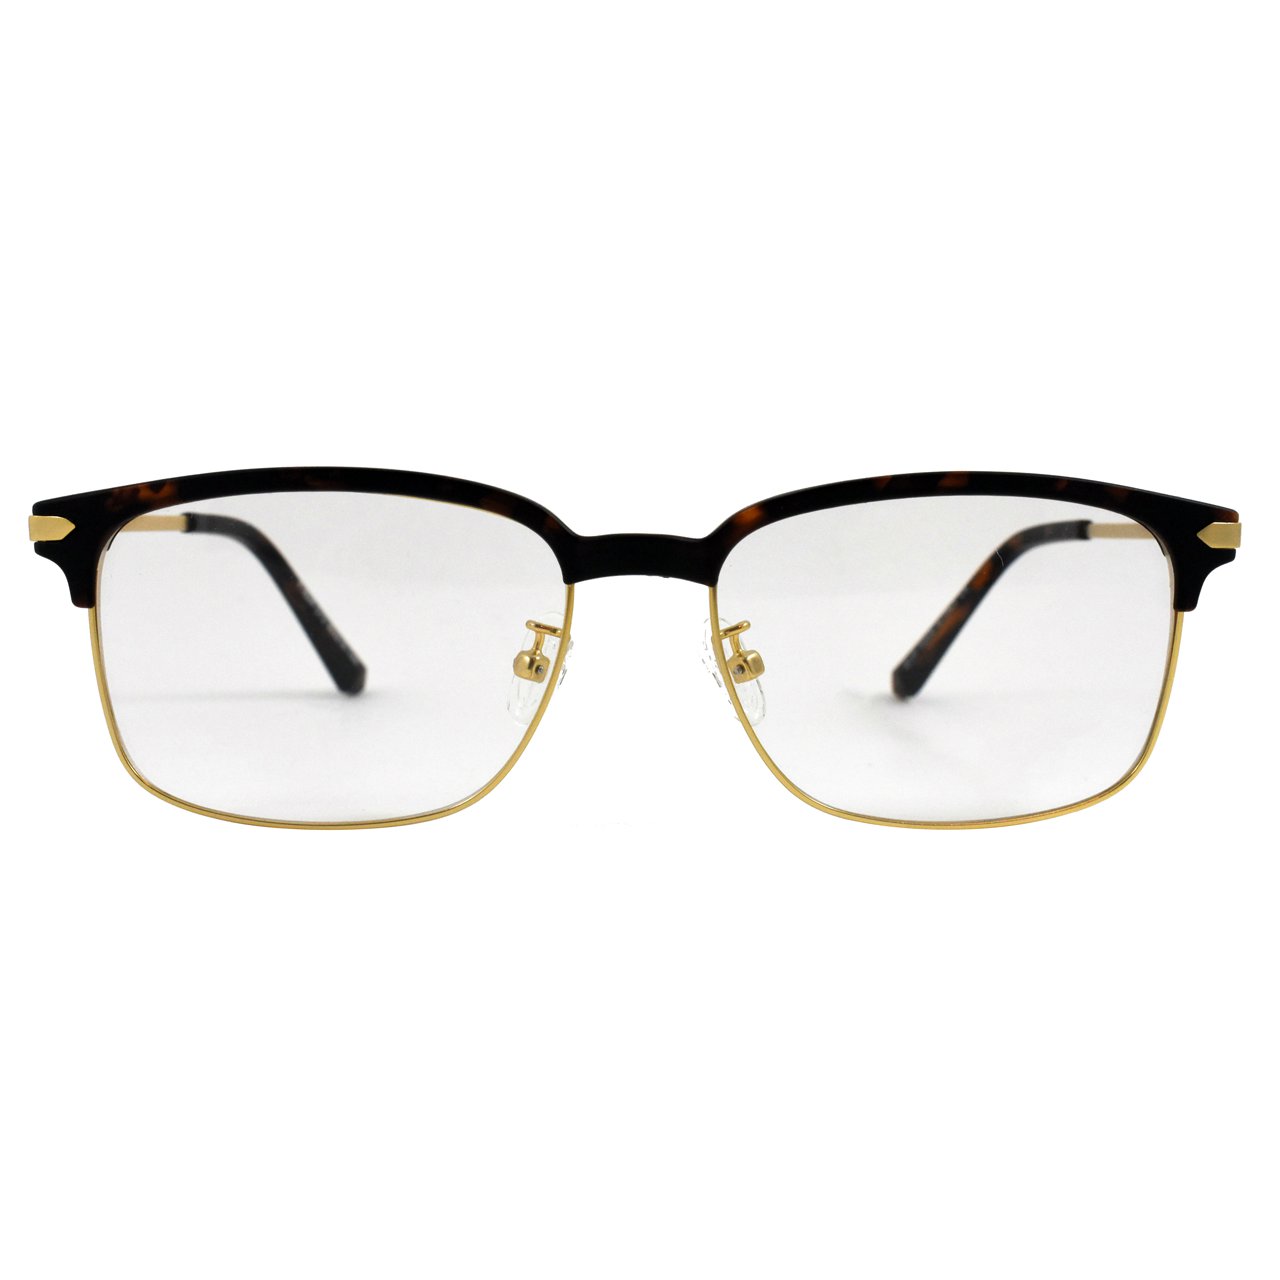 فریم عینک طبی مدل Tr90 Casual Design